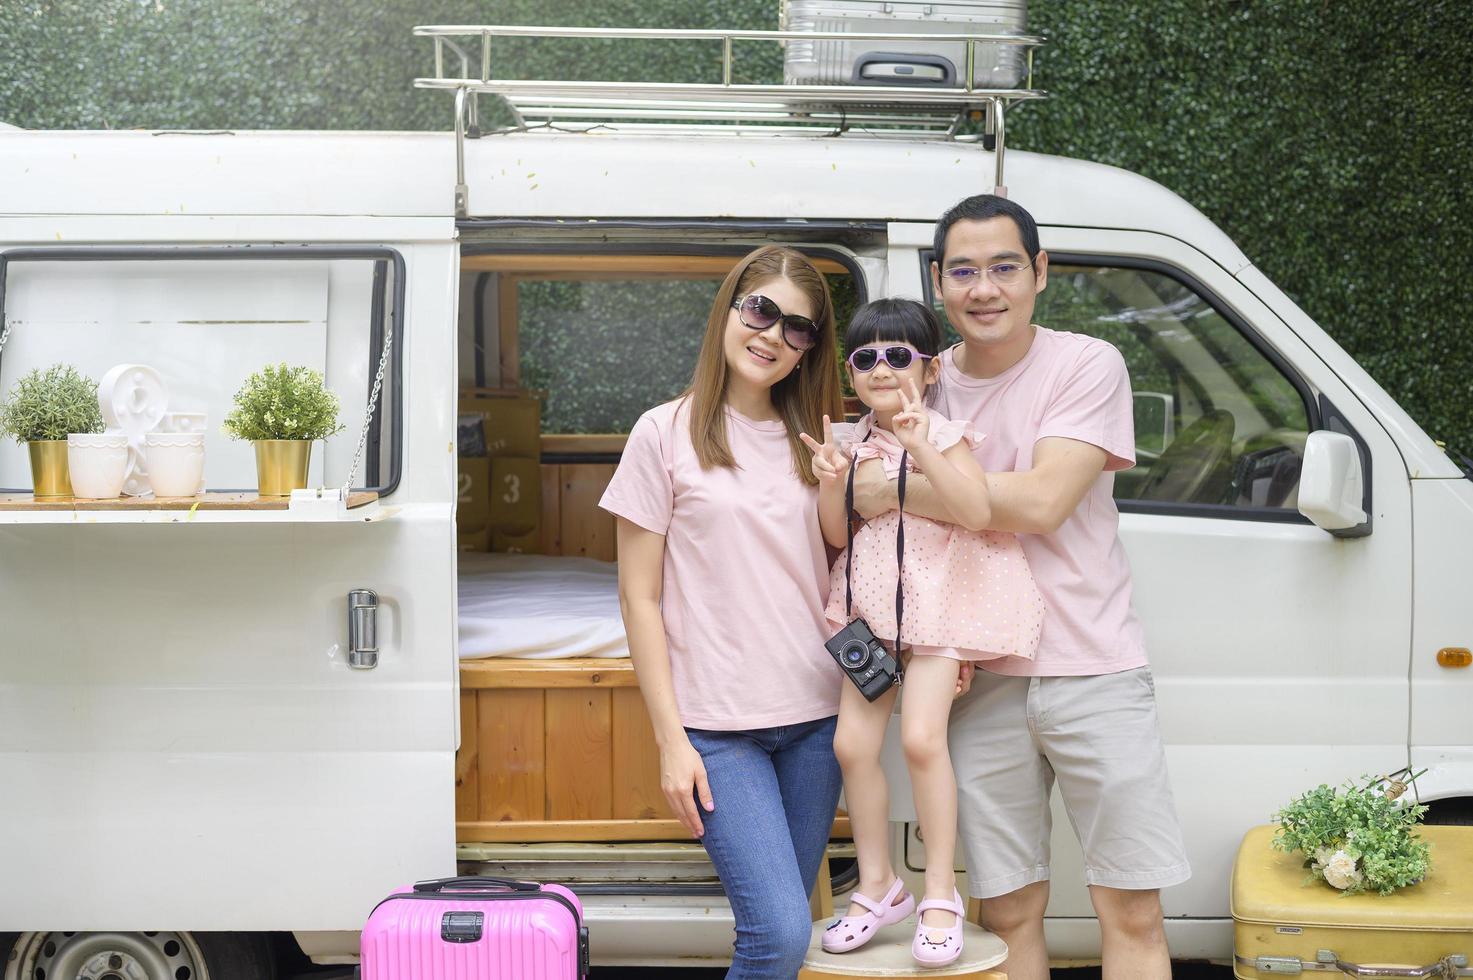 une joyeuse famille asiatique profitant d'un voyage sur la route et d'un voyage part en vacances, voyage et tourisme concept photo